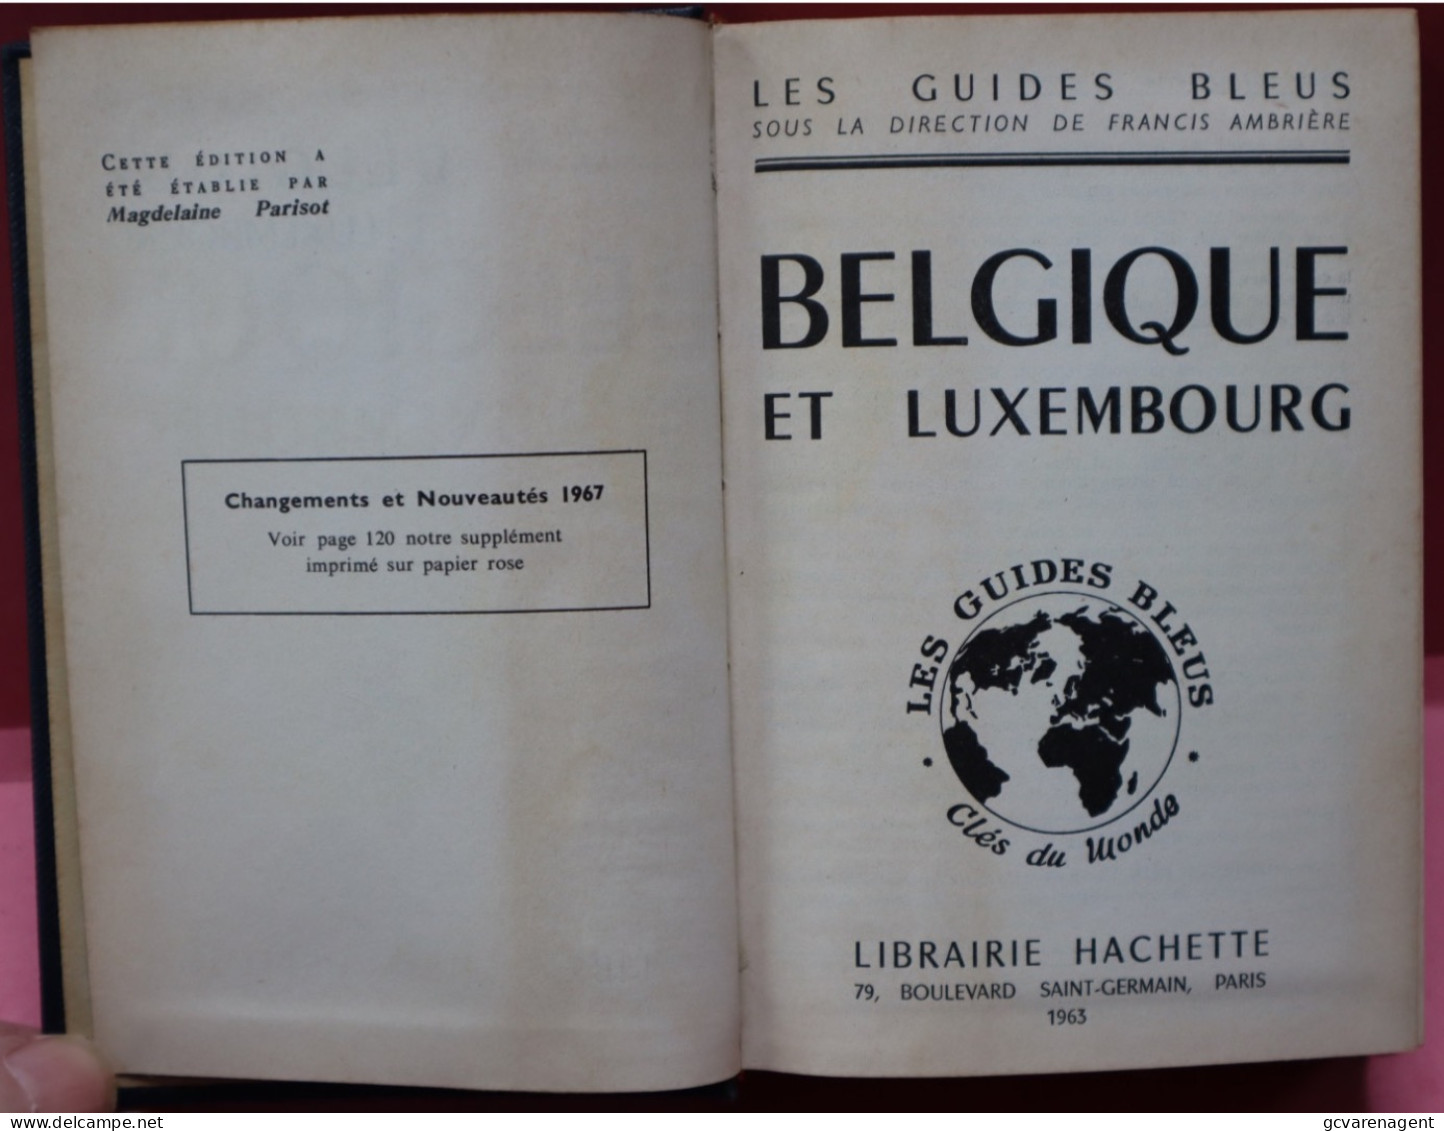 LES GUIDES BLEUS  1963  BELGIQUES  LUXEMBOUR  BELLE ETAT COMPLET  BON ETAT   VOIR IMAGES - Turismo